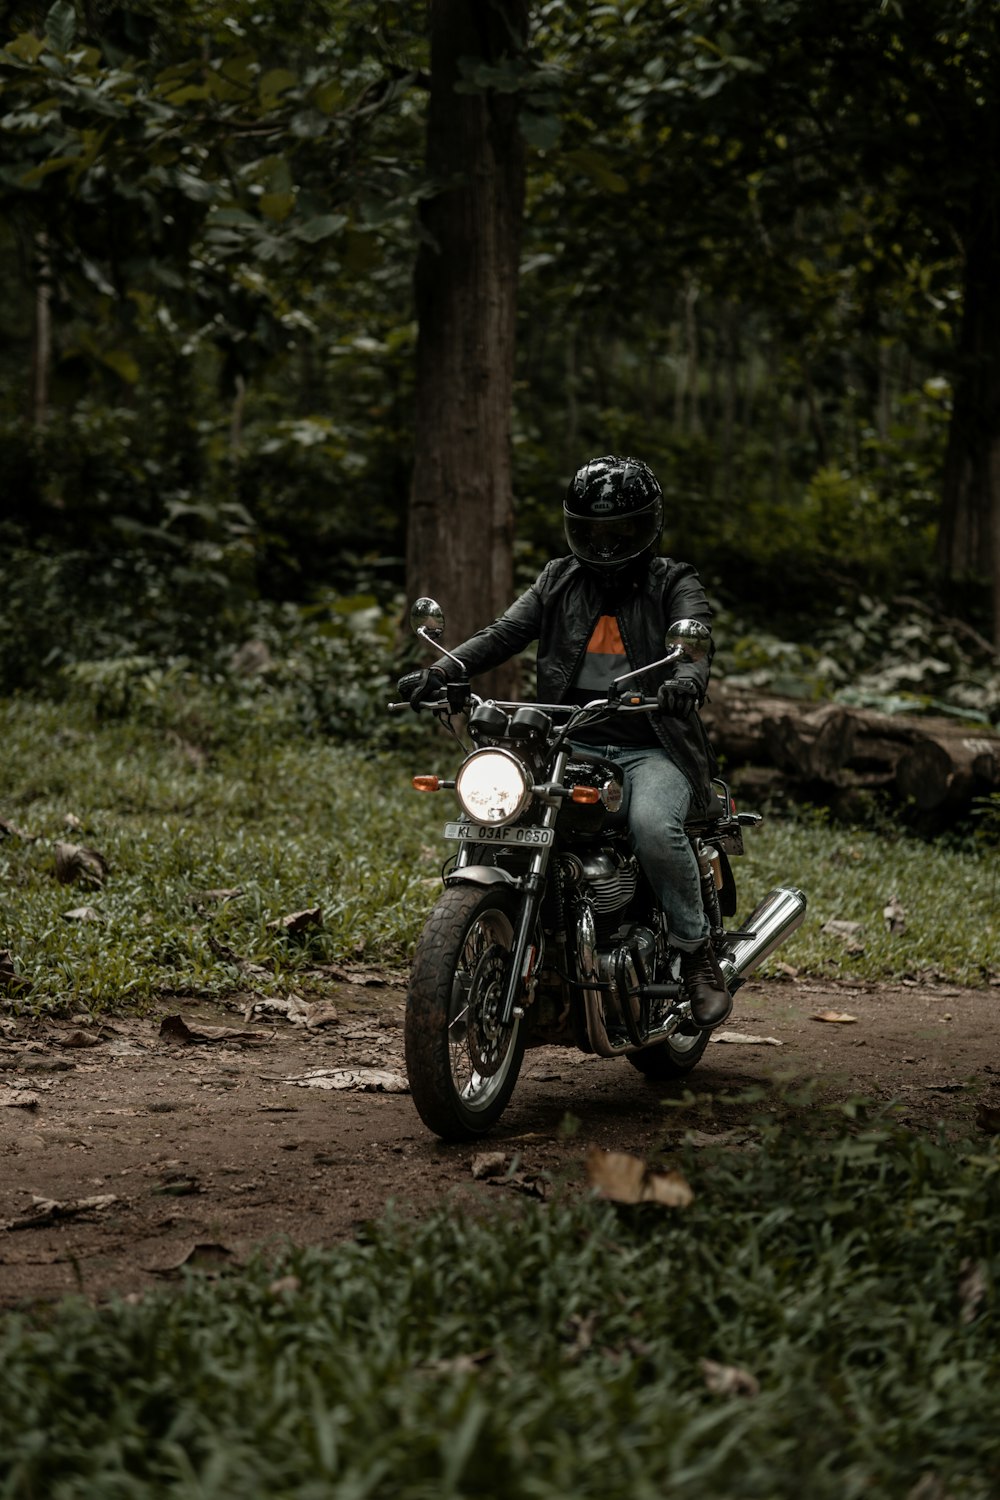 Un homme conduisant une moto sur un chemin de terre